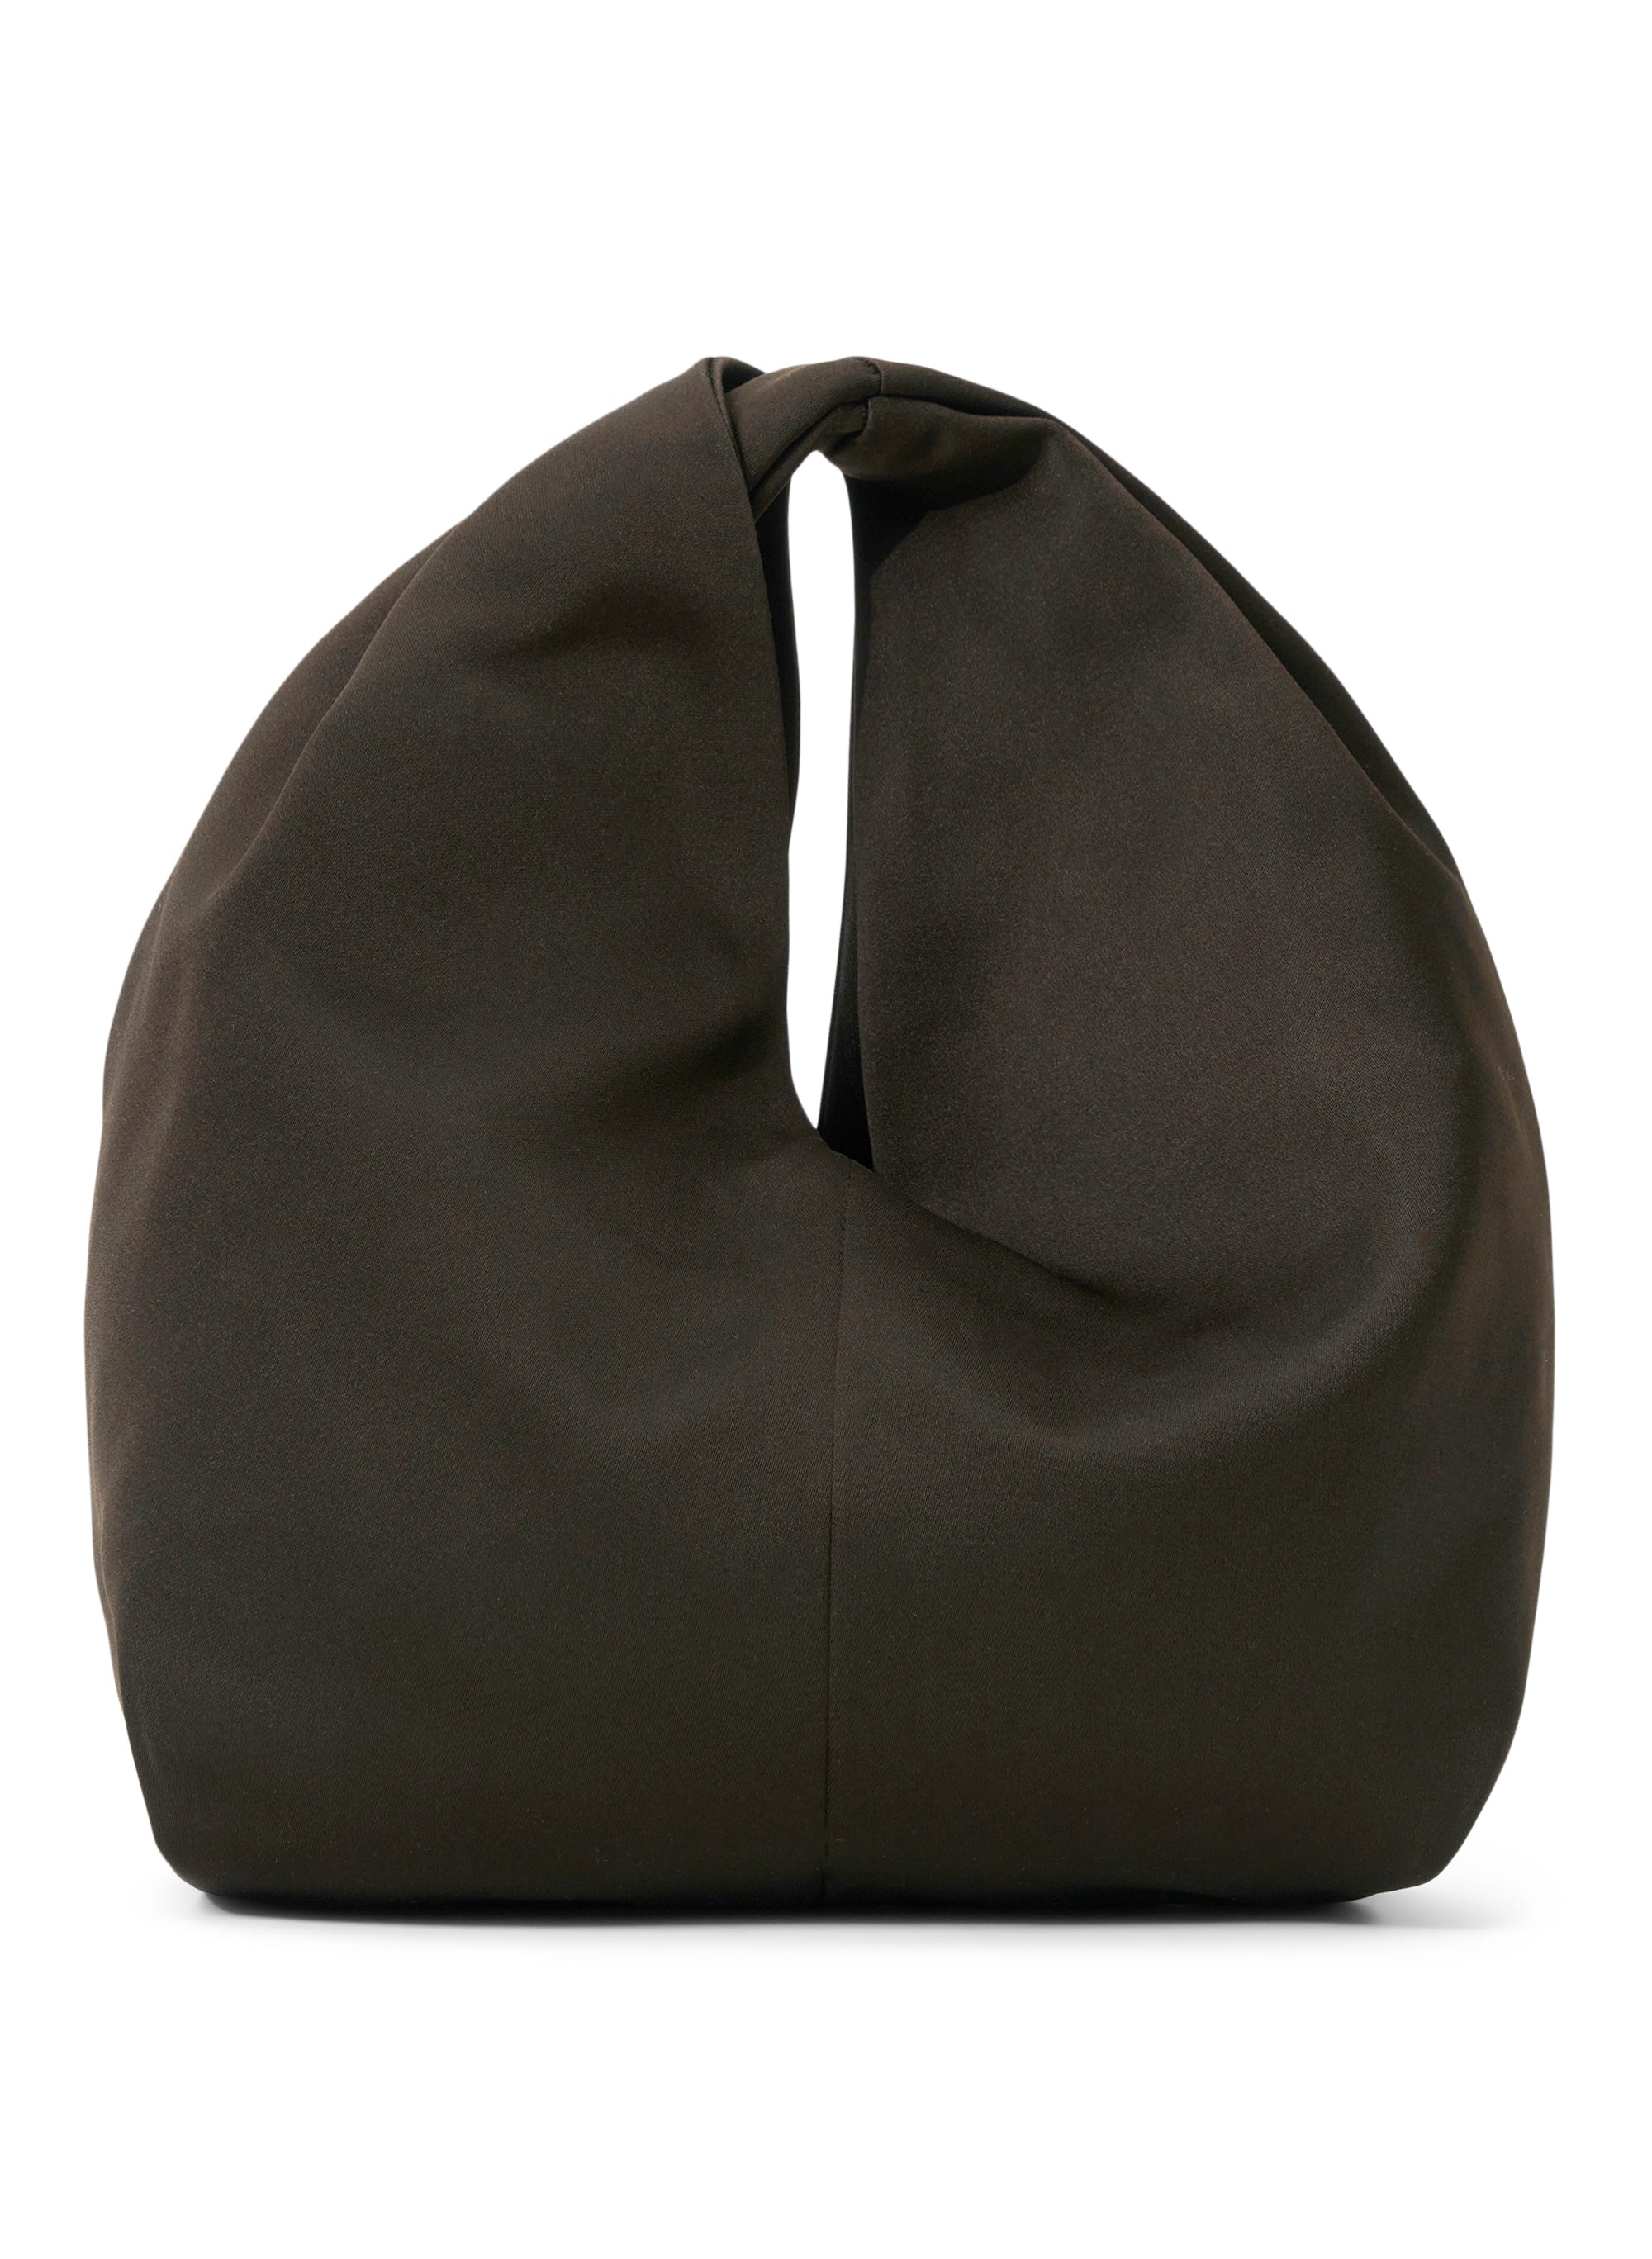 The bag of... Simone - Bag at You